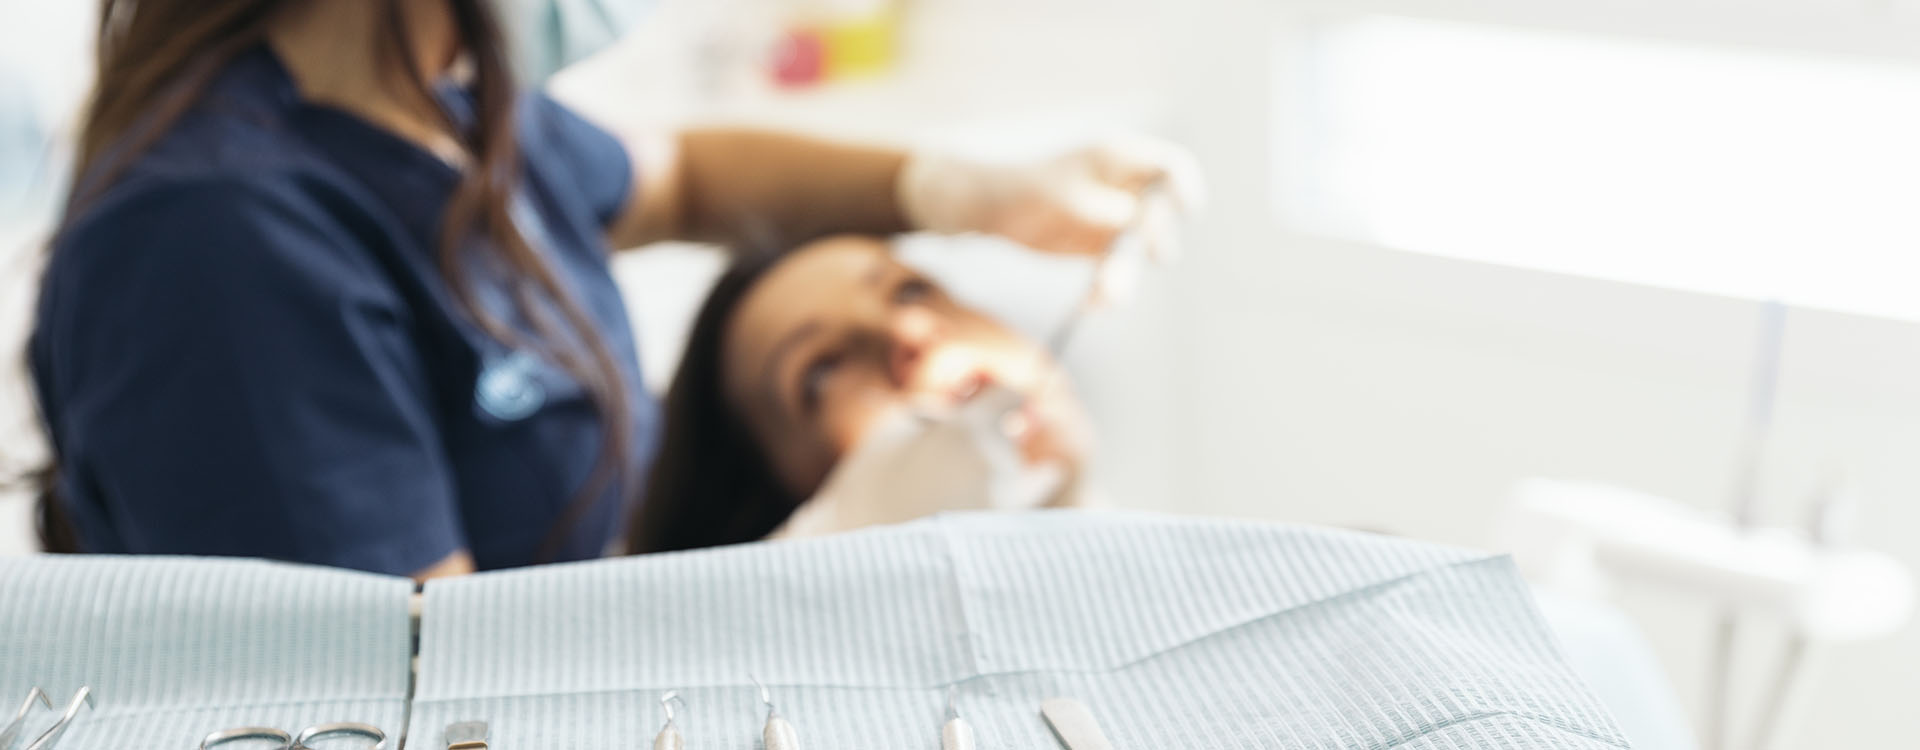 Clínica Dental Andrea Compte, tu Centro Odontológico especializado. Odontología en Cálig. Dentista con un paciente durante una intervención dental.